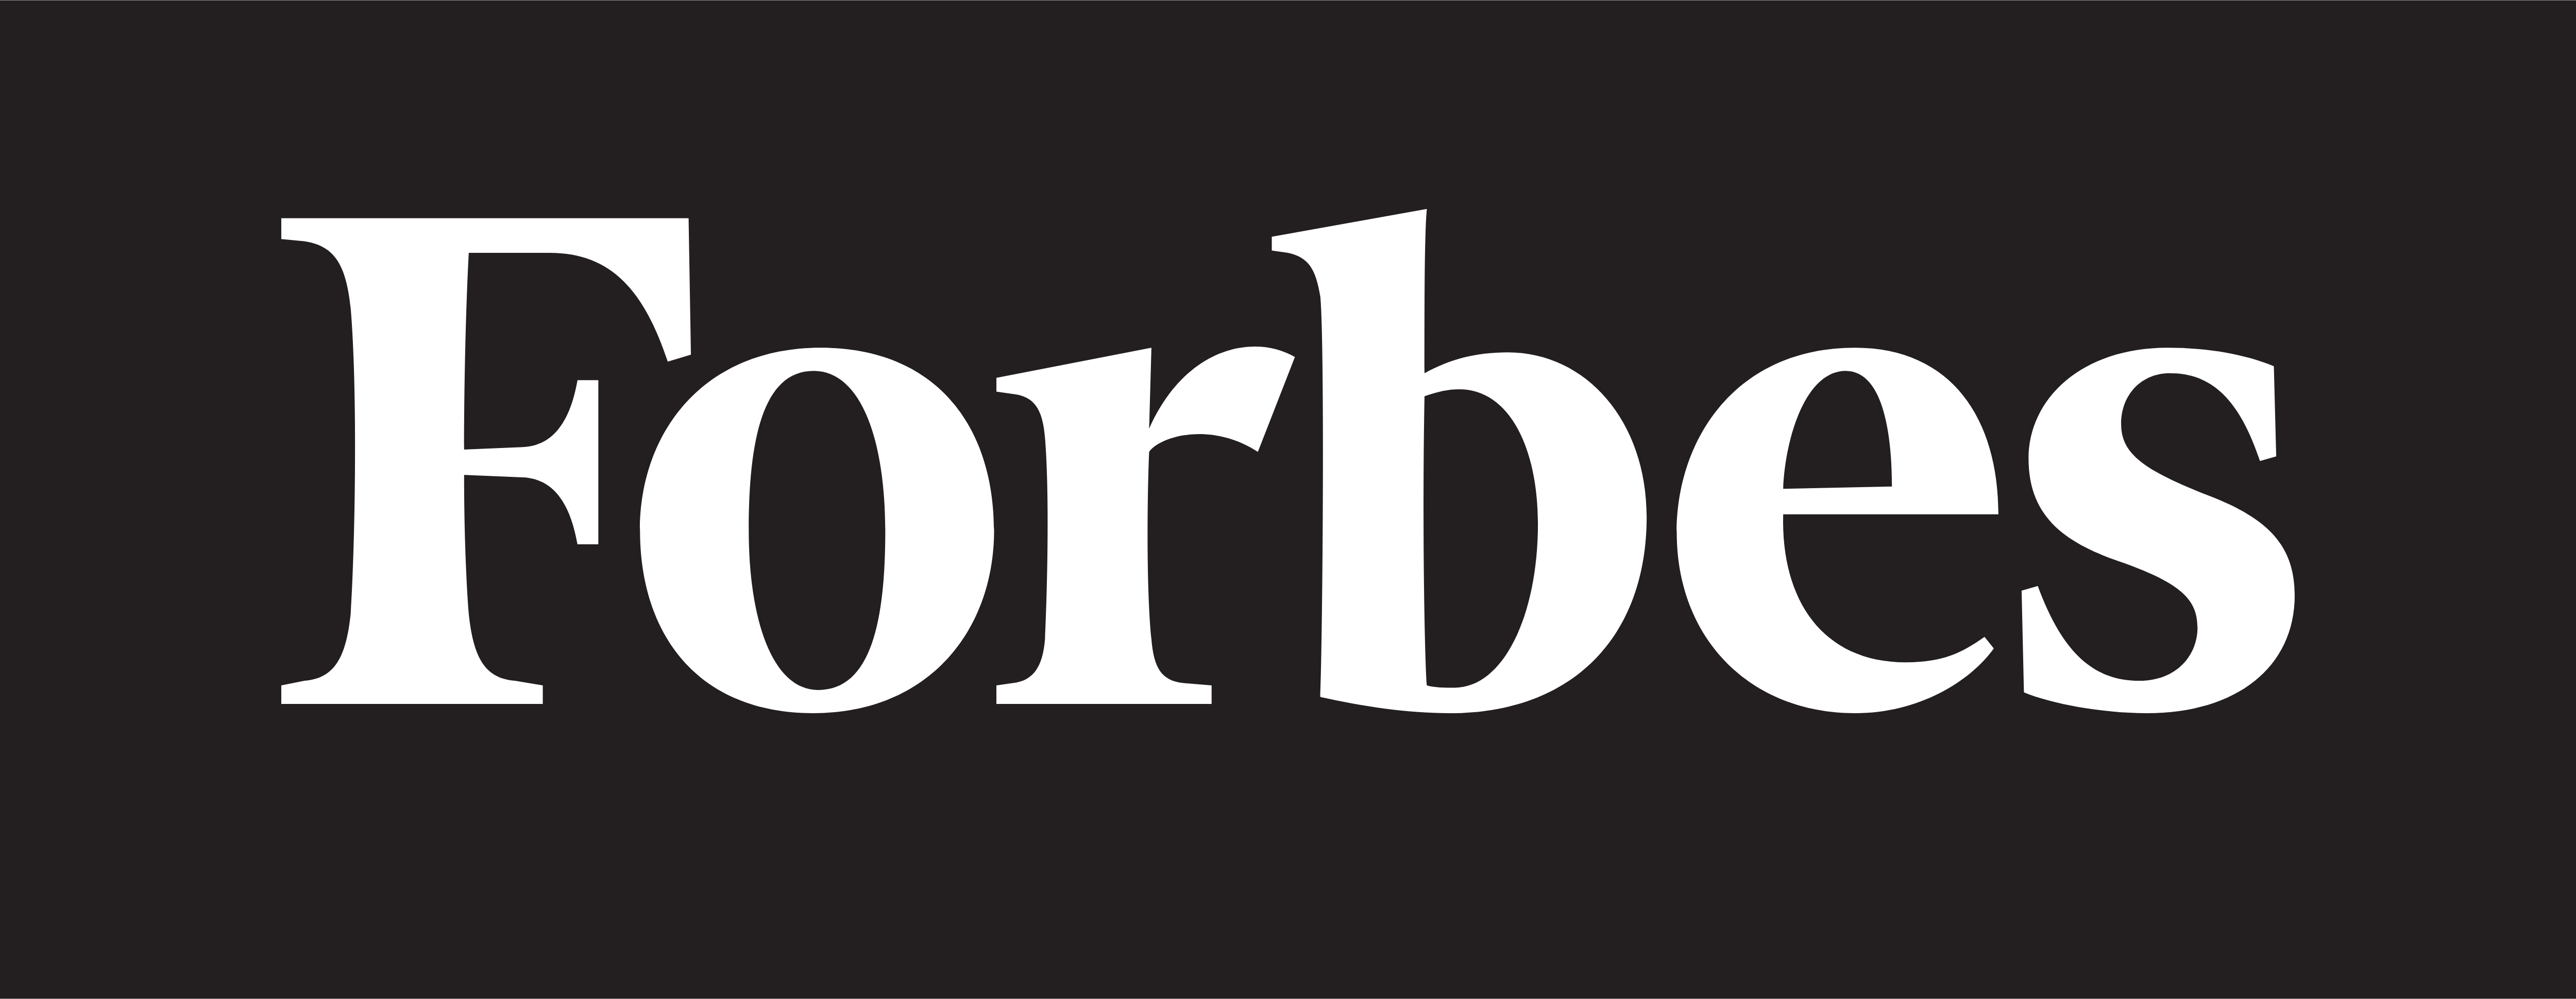 Forbes – Téléchargement de logos